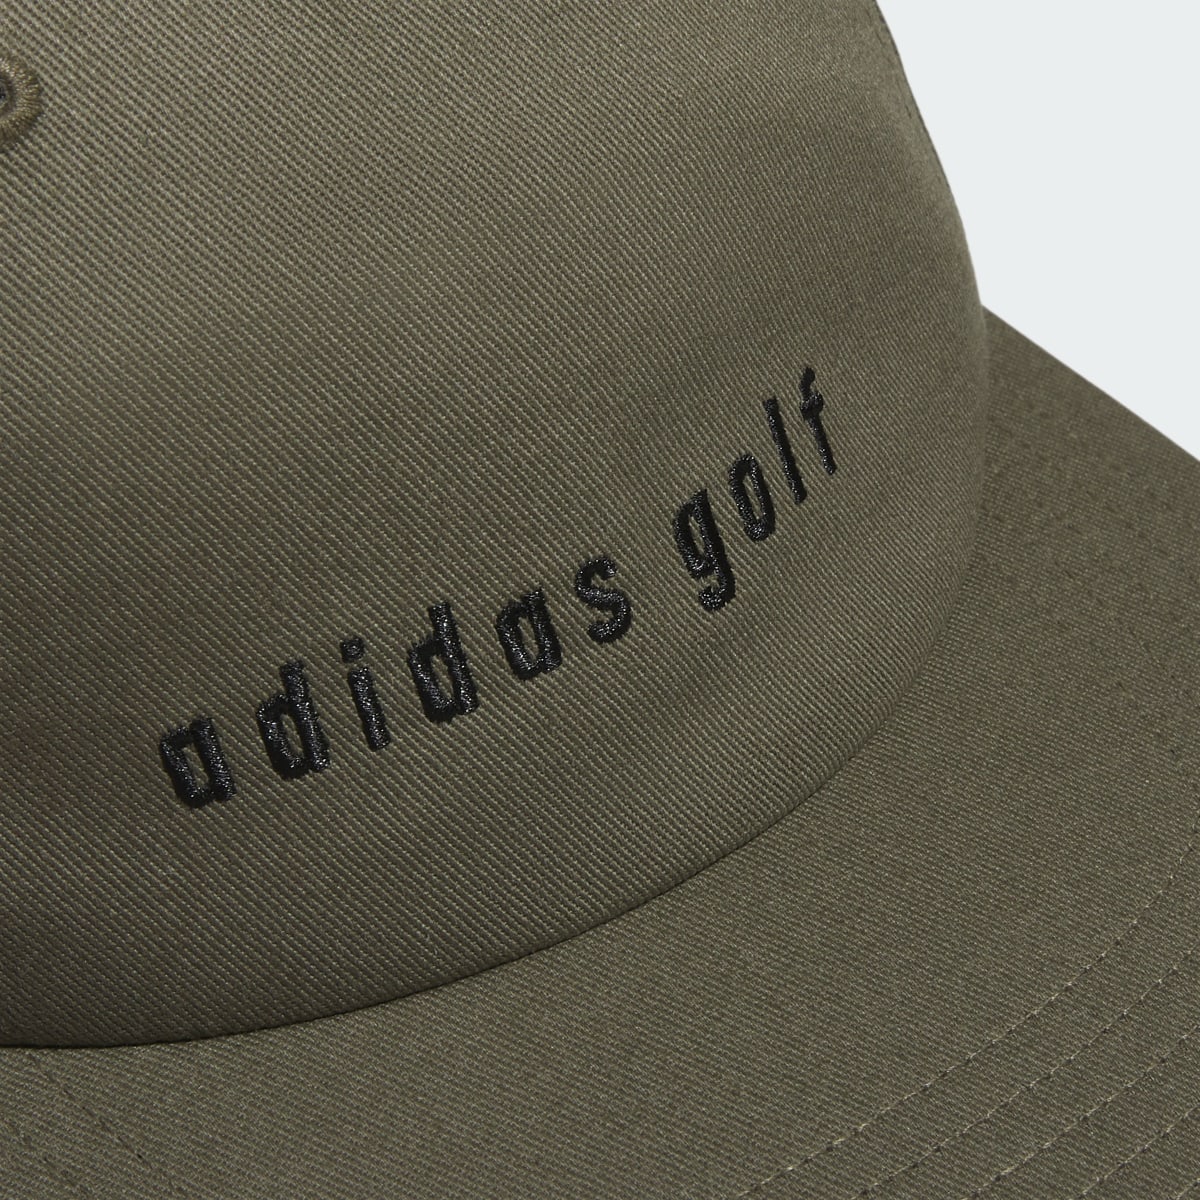 Adidas Clutch Hat. 4